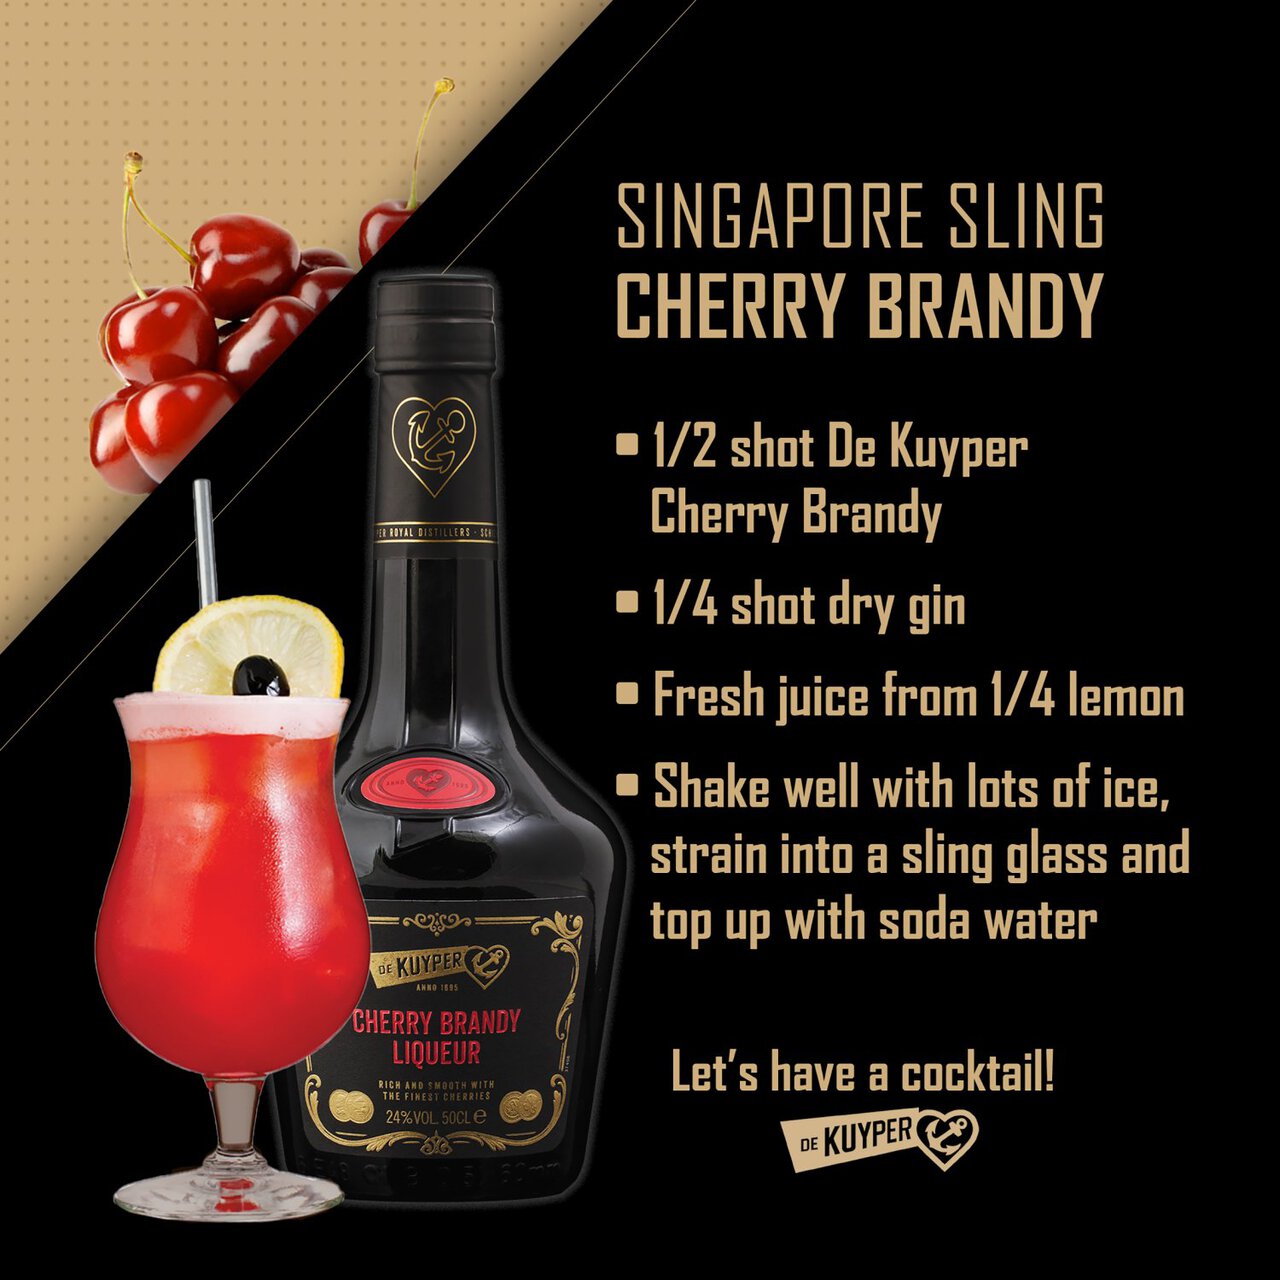 De Kuyper Cherry Brandy Liqueur 50cl